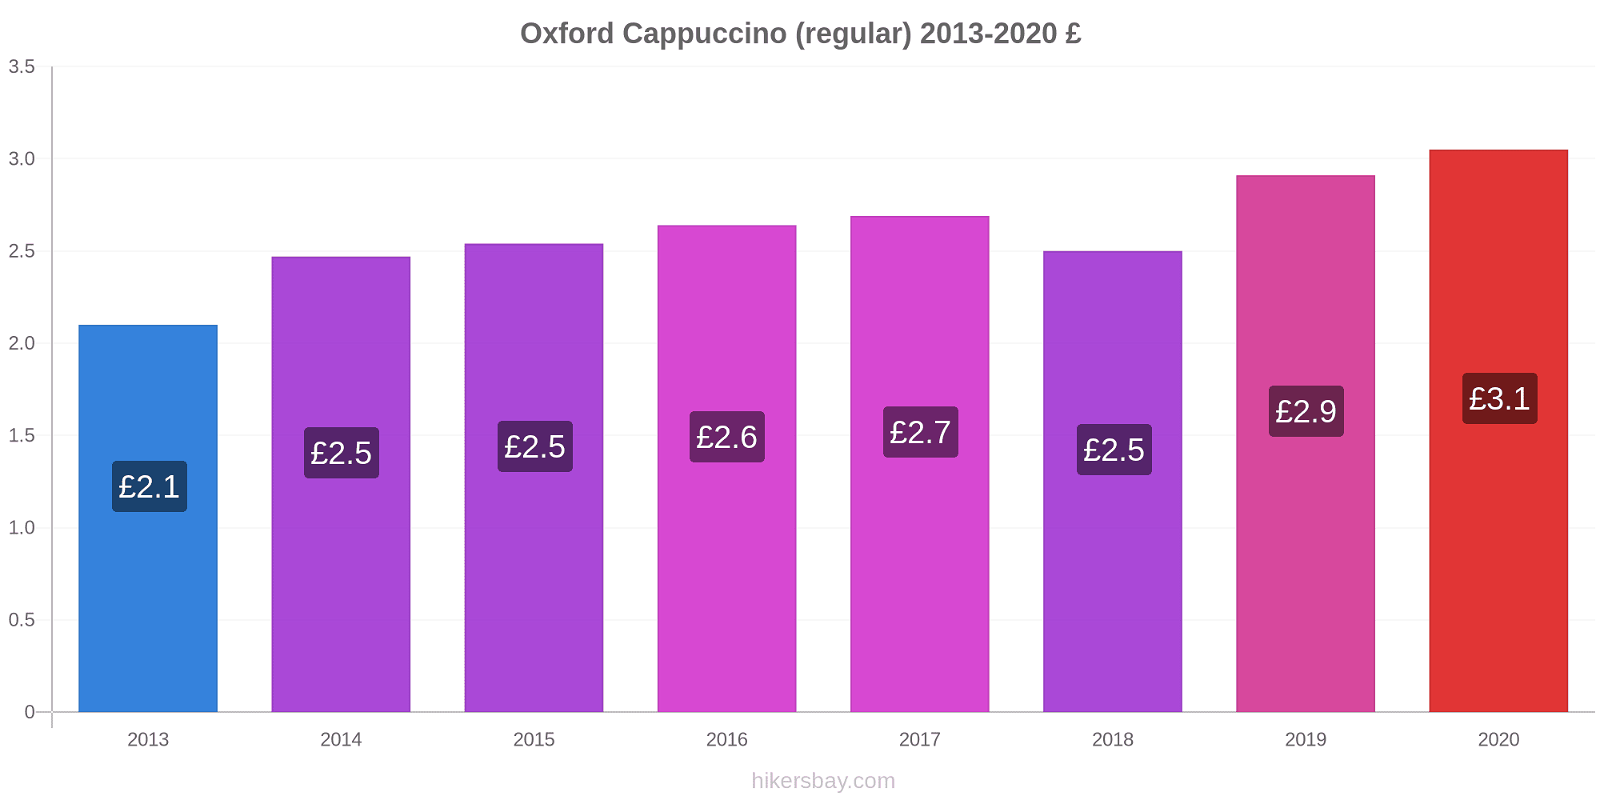 Oxford price changes Cappuccino (regular) hikersbay.com